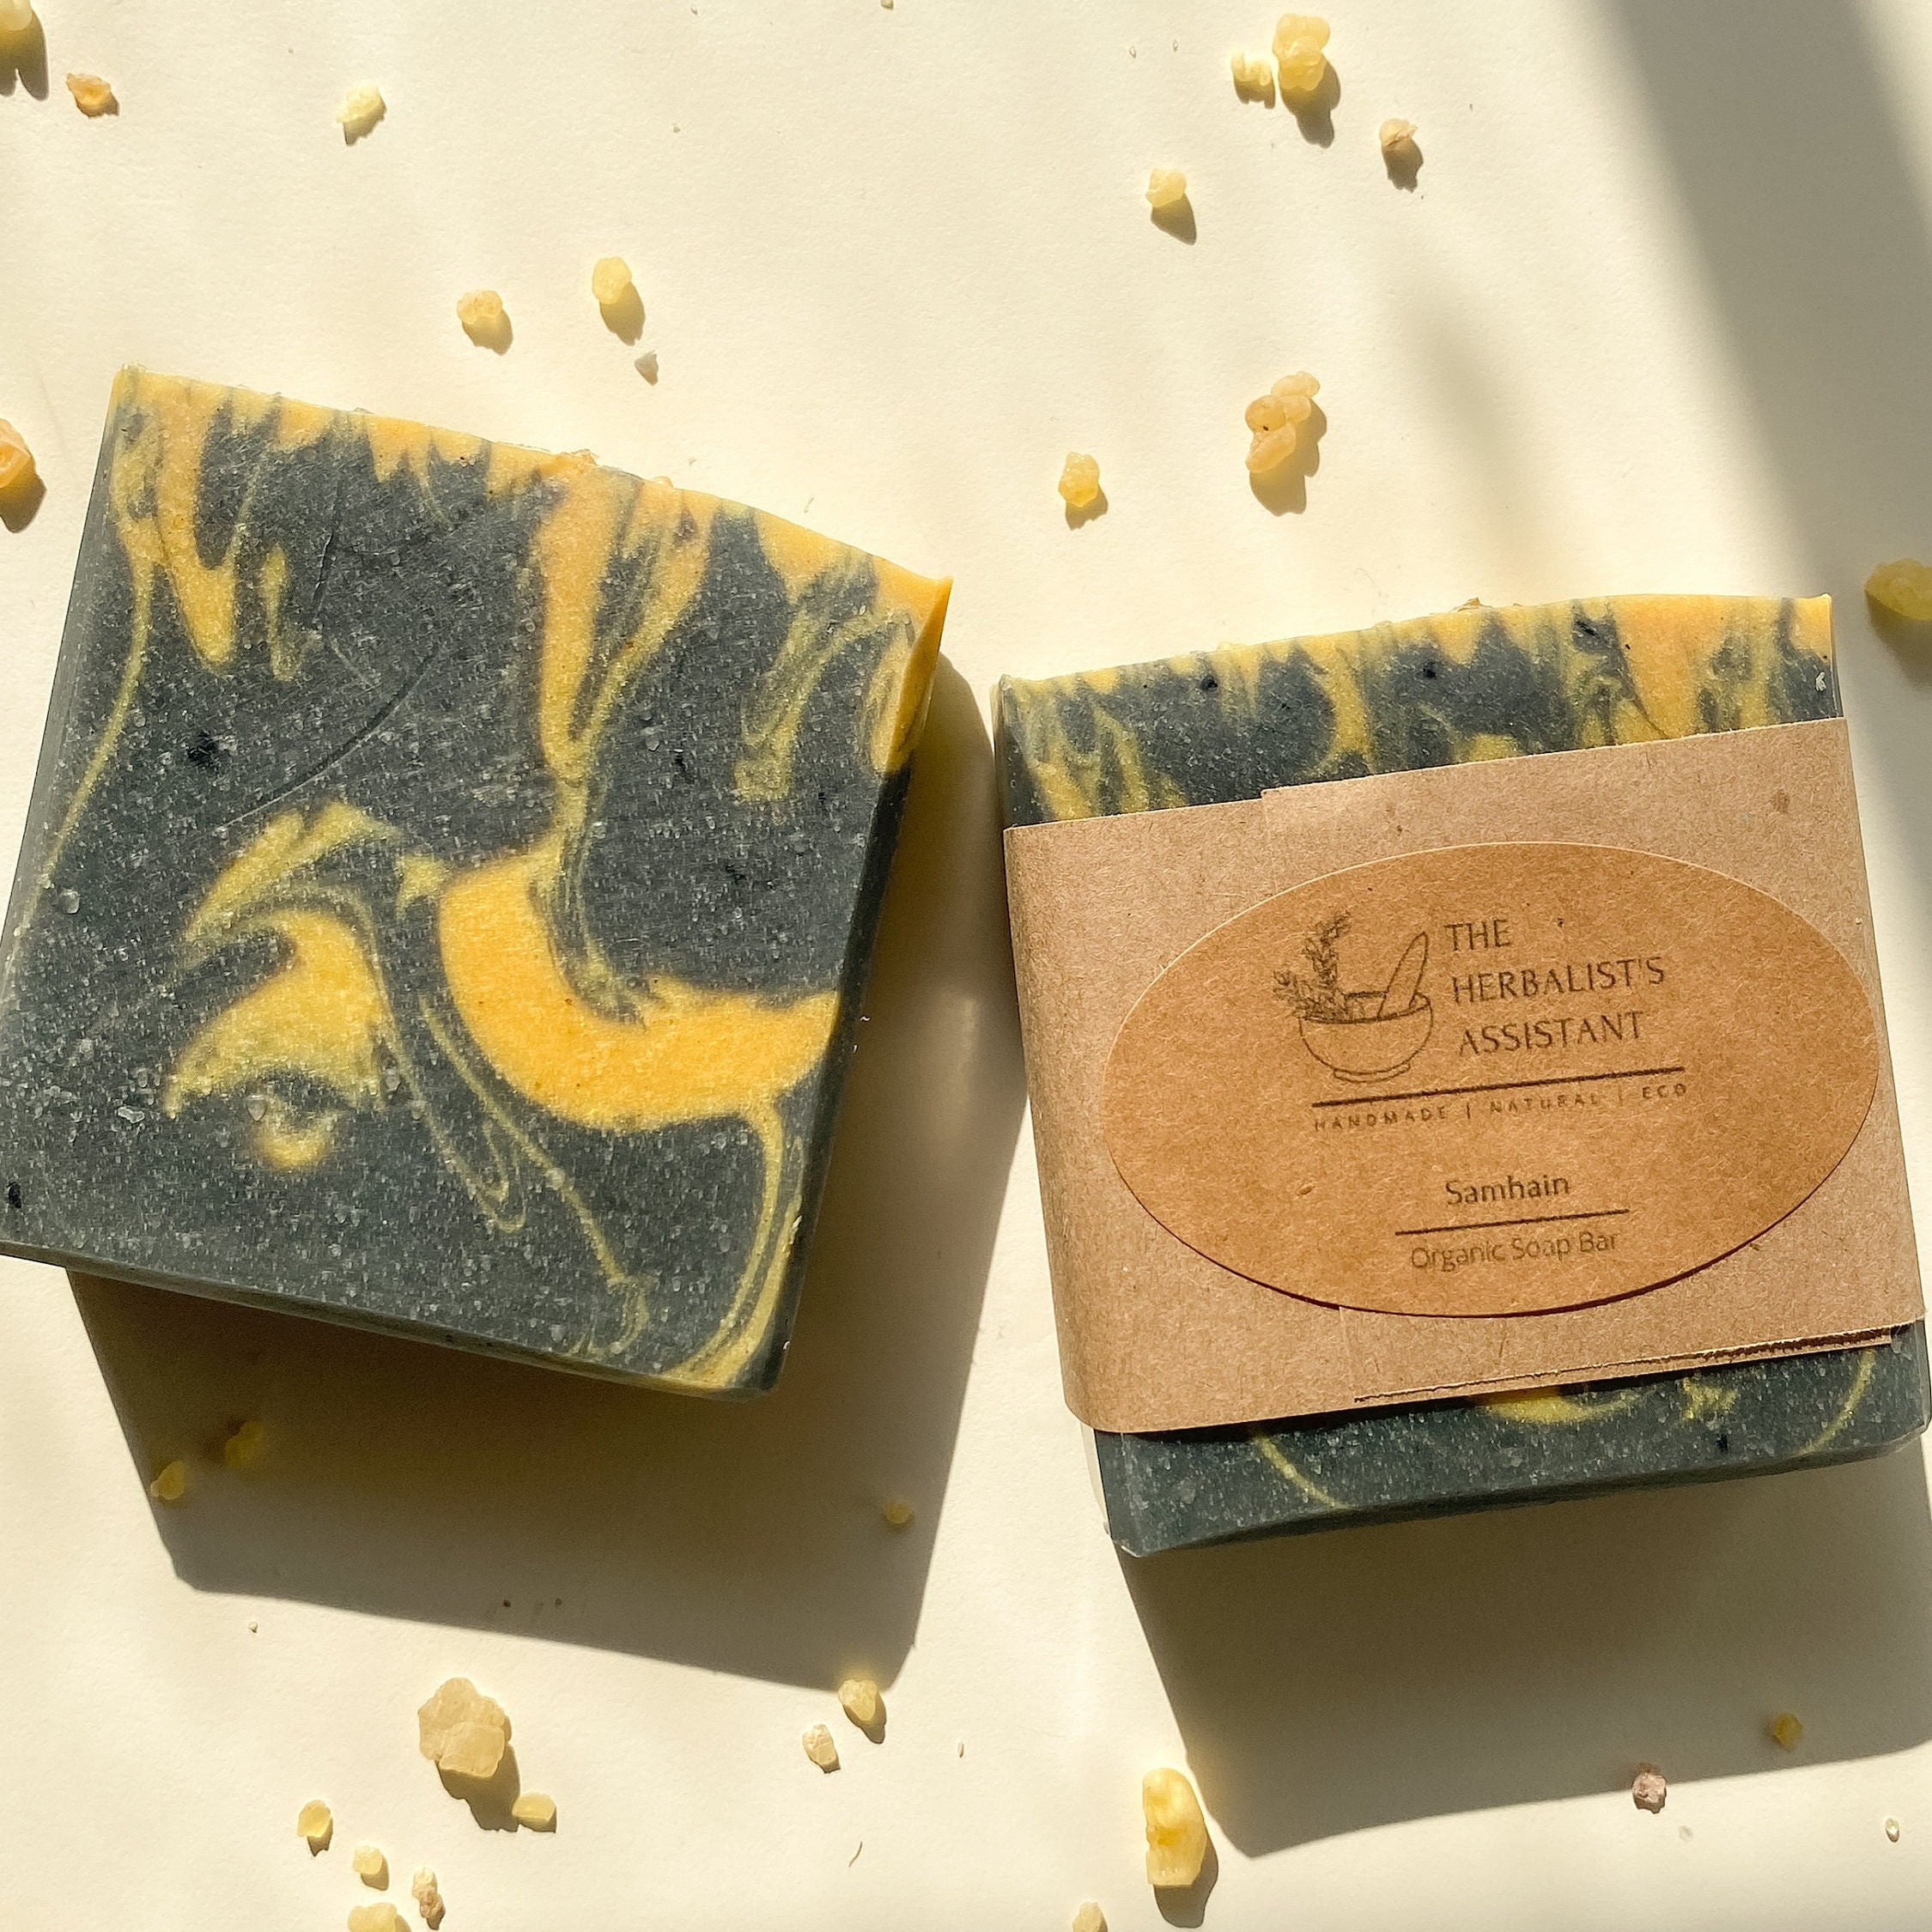 Frankincense & Myrrh Bar Soap